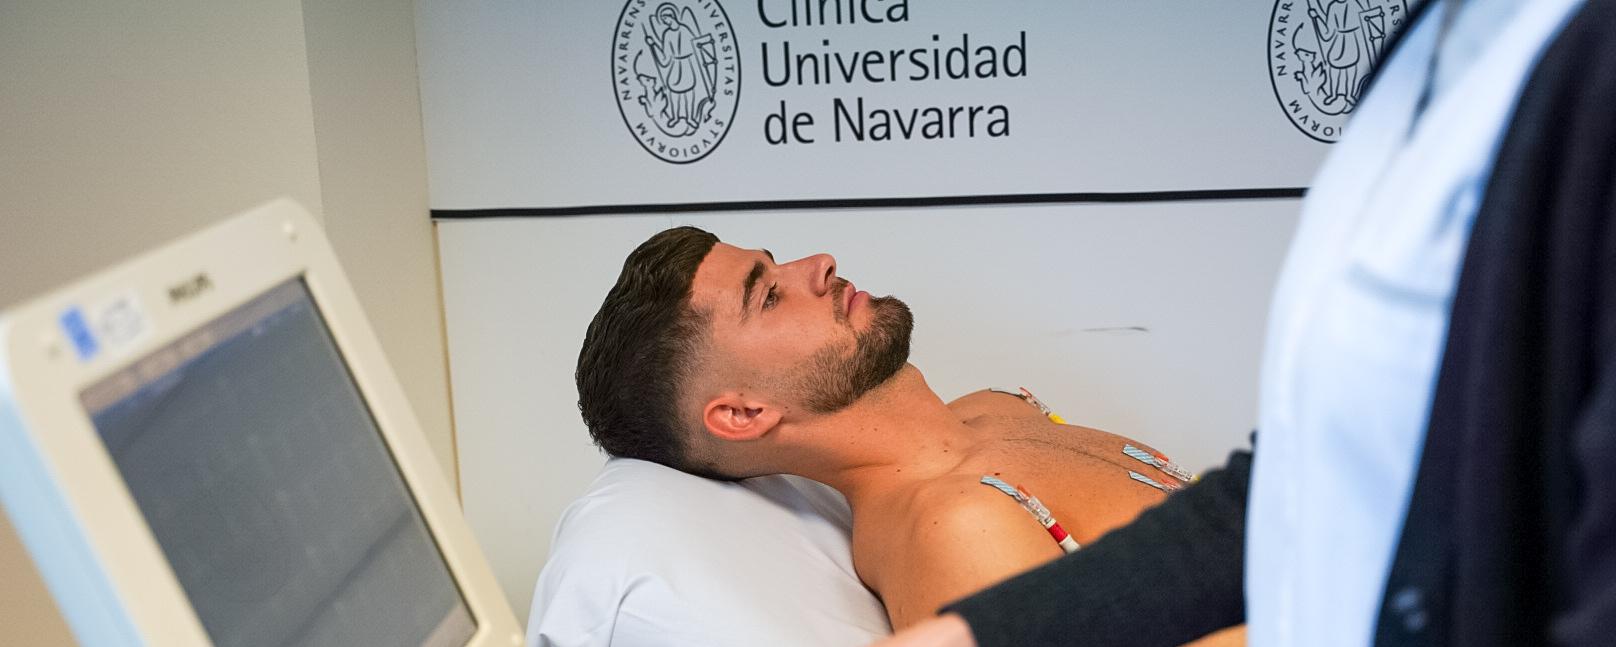 Segundo día de pruebas médicas en la Clínica Universidad de Navarra